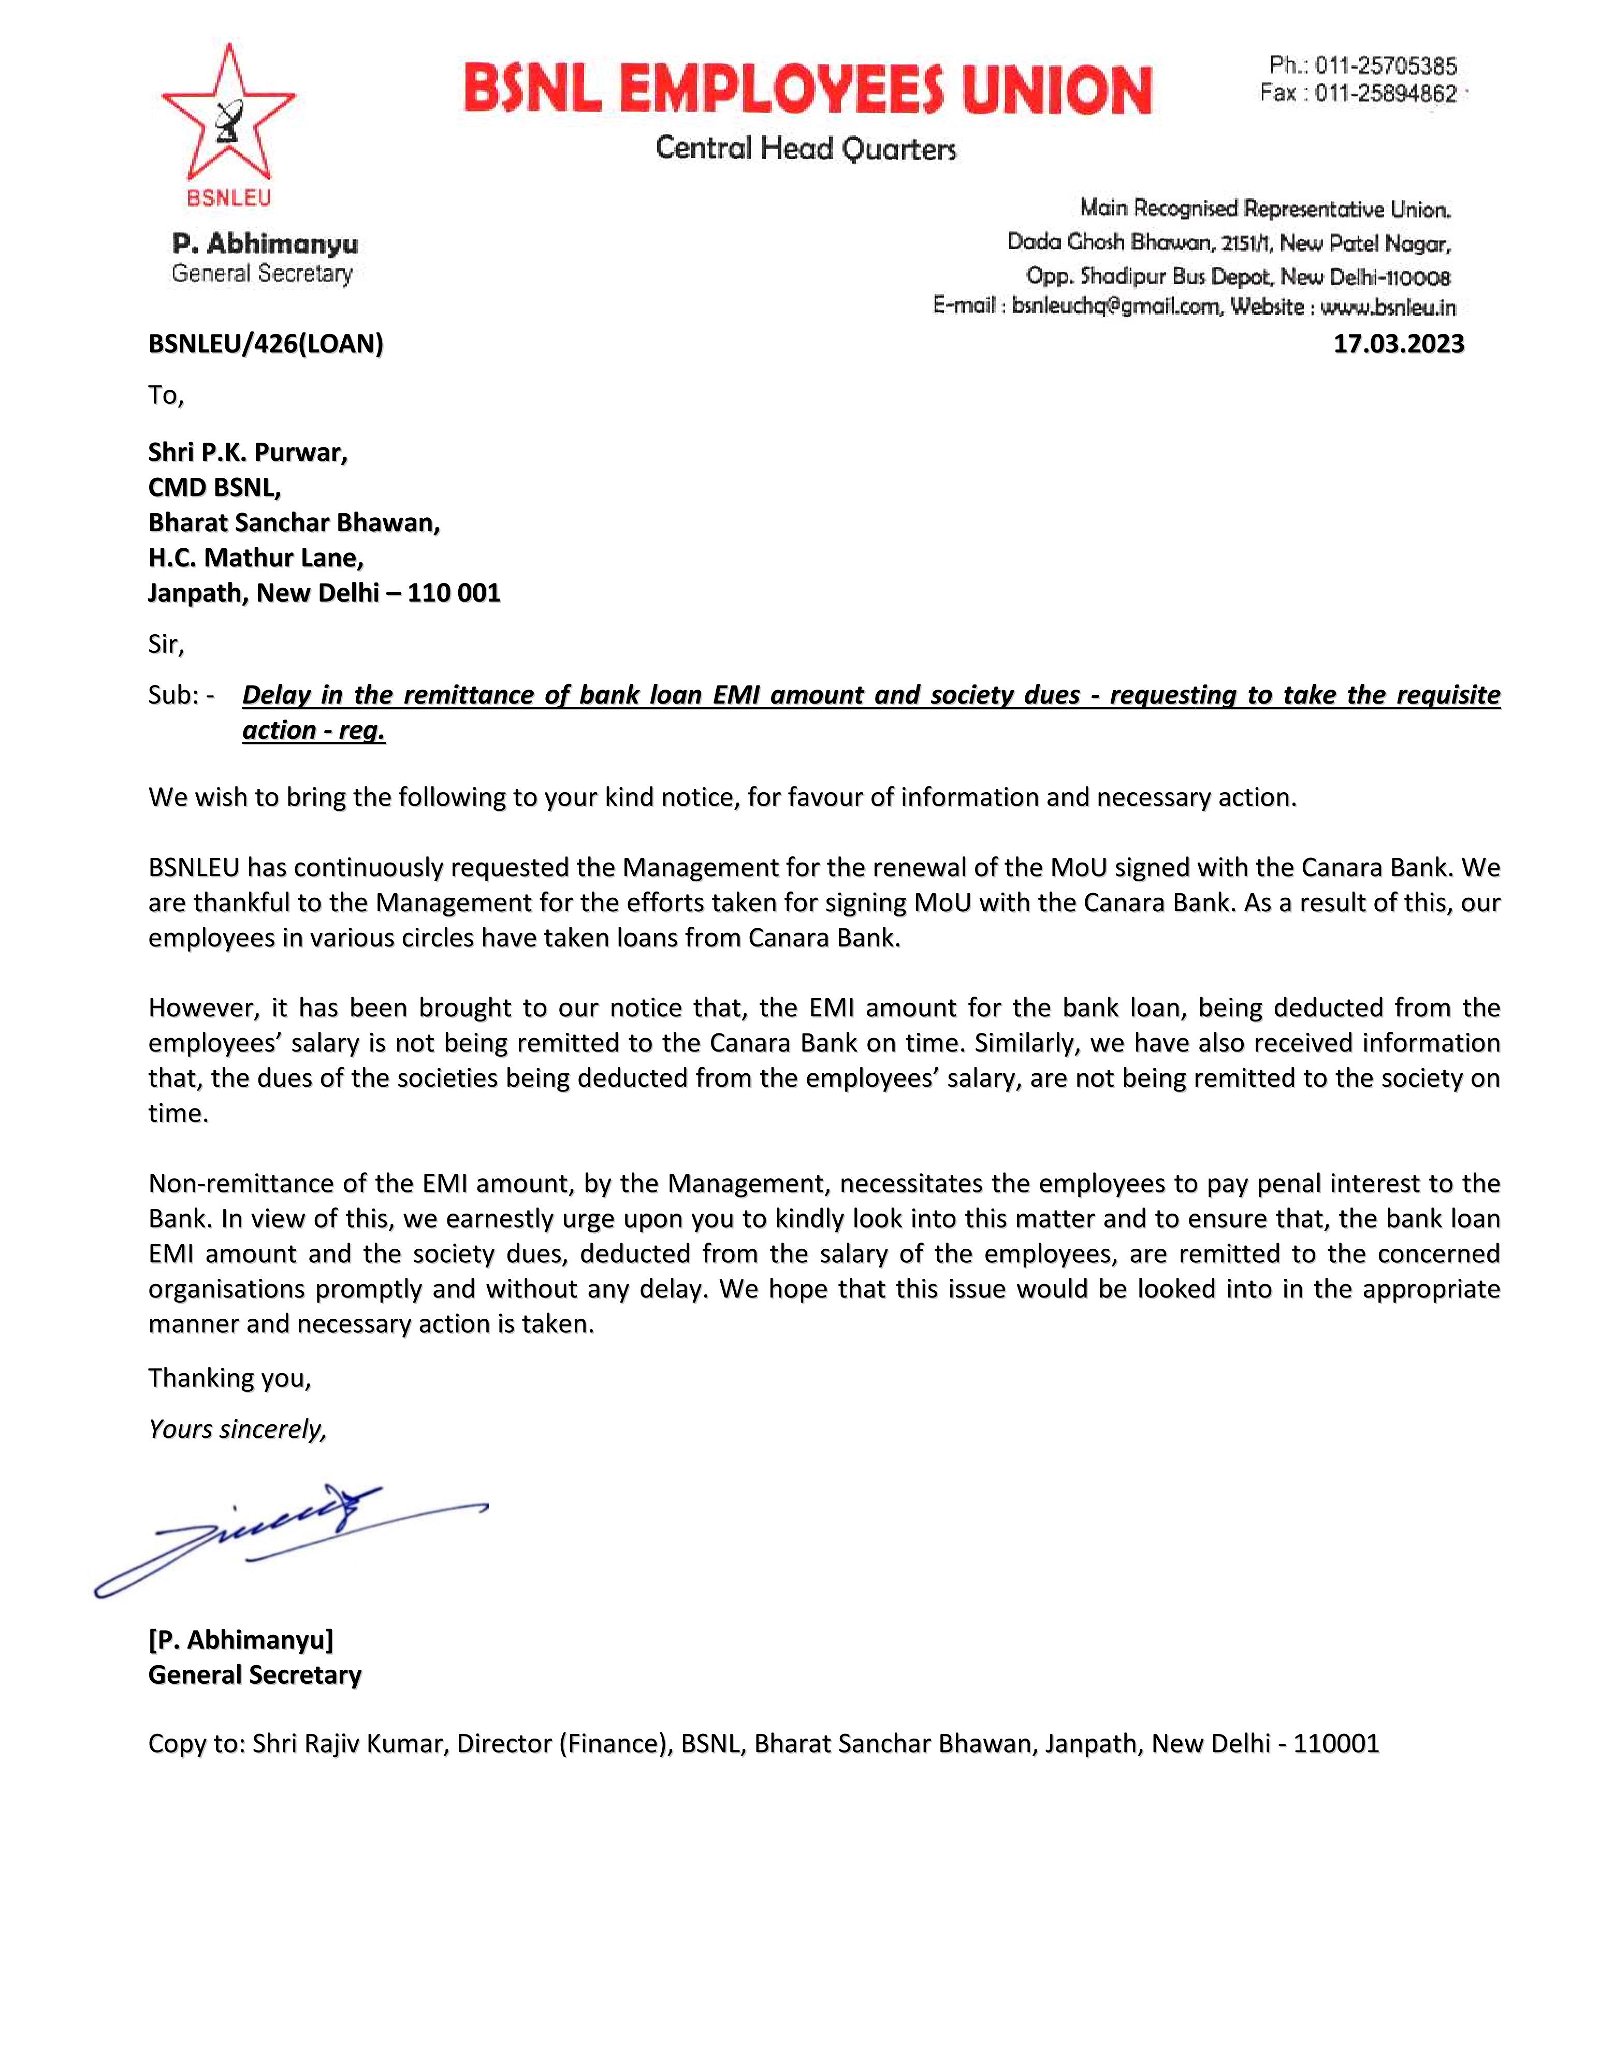 *बँक कर्जाची EMI रक्कम आणि सोसायटीची देय रक्कम पाठवण्यास विलंब –* *BSNLEU ने CMD BSNL यांना पत्र लिहून योग्य कारवाई करण्याची मागणी केली आहे. Image 